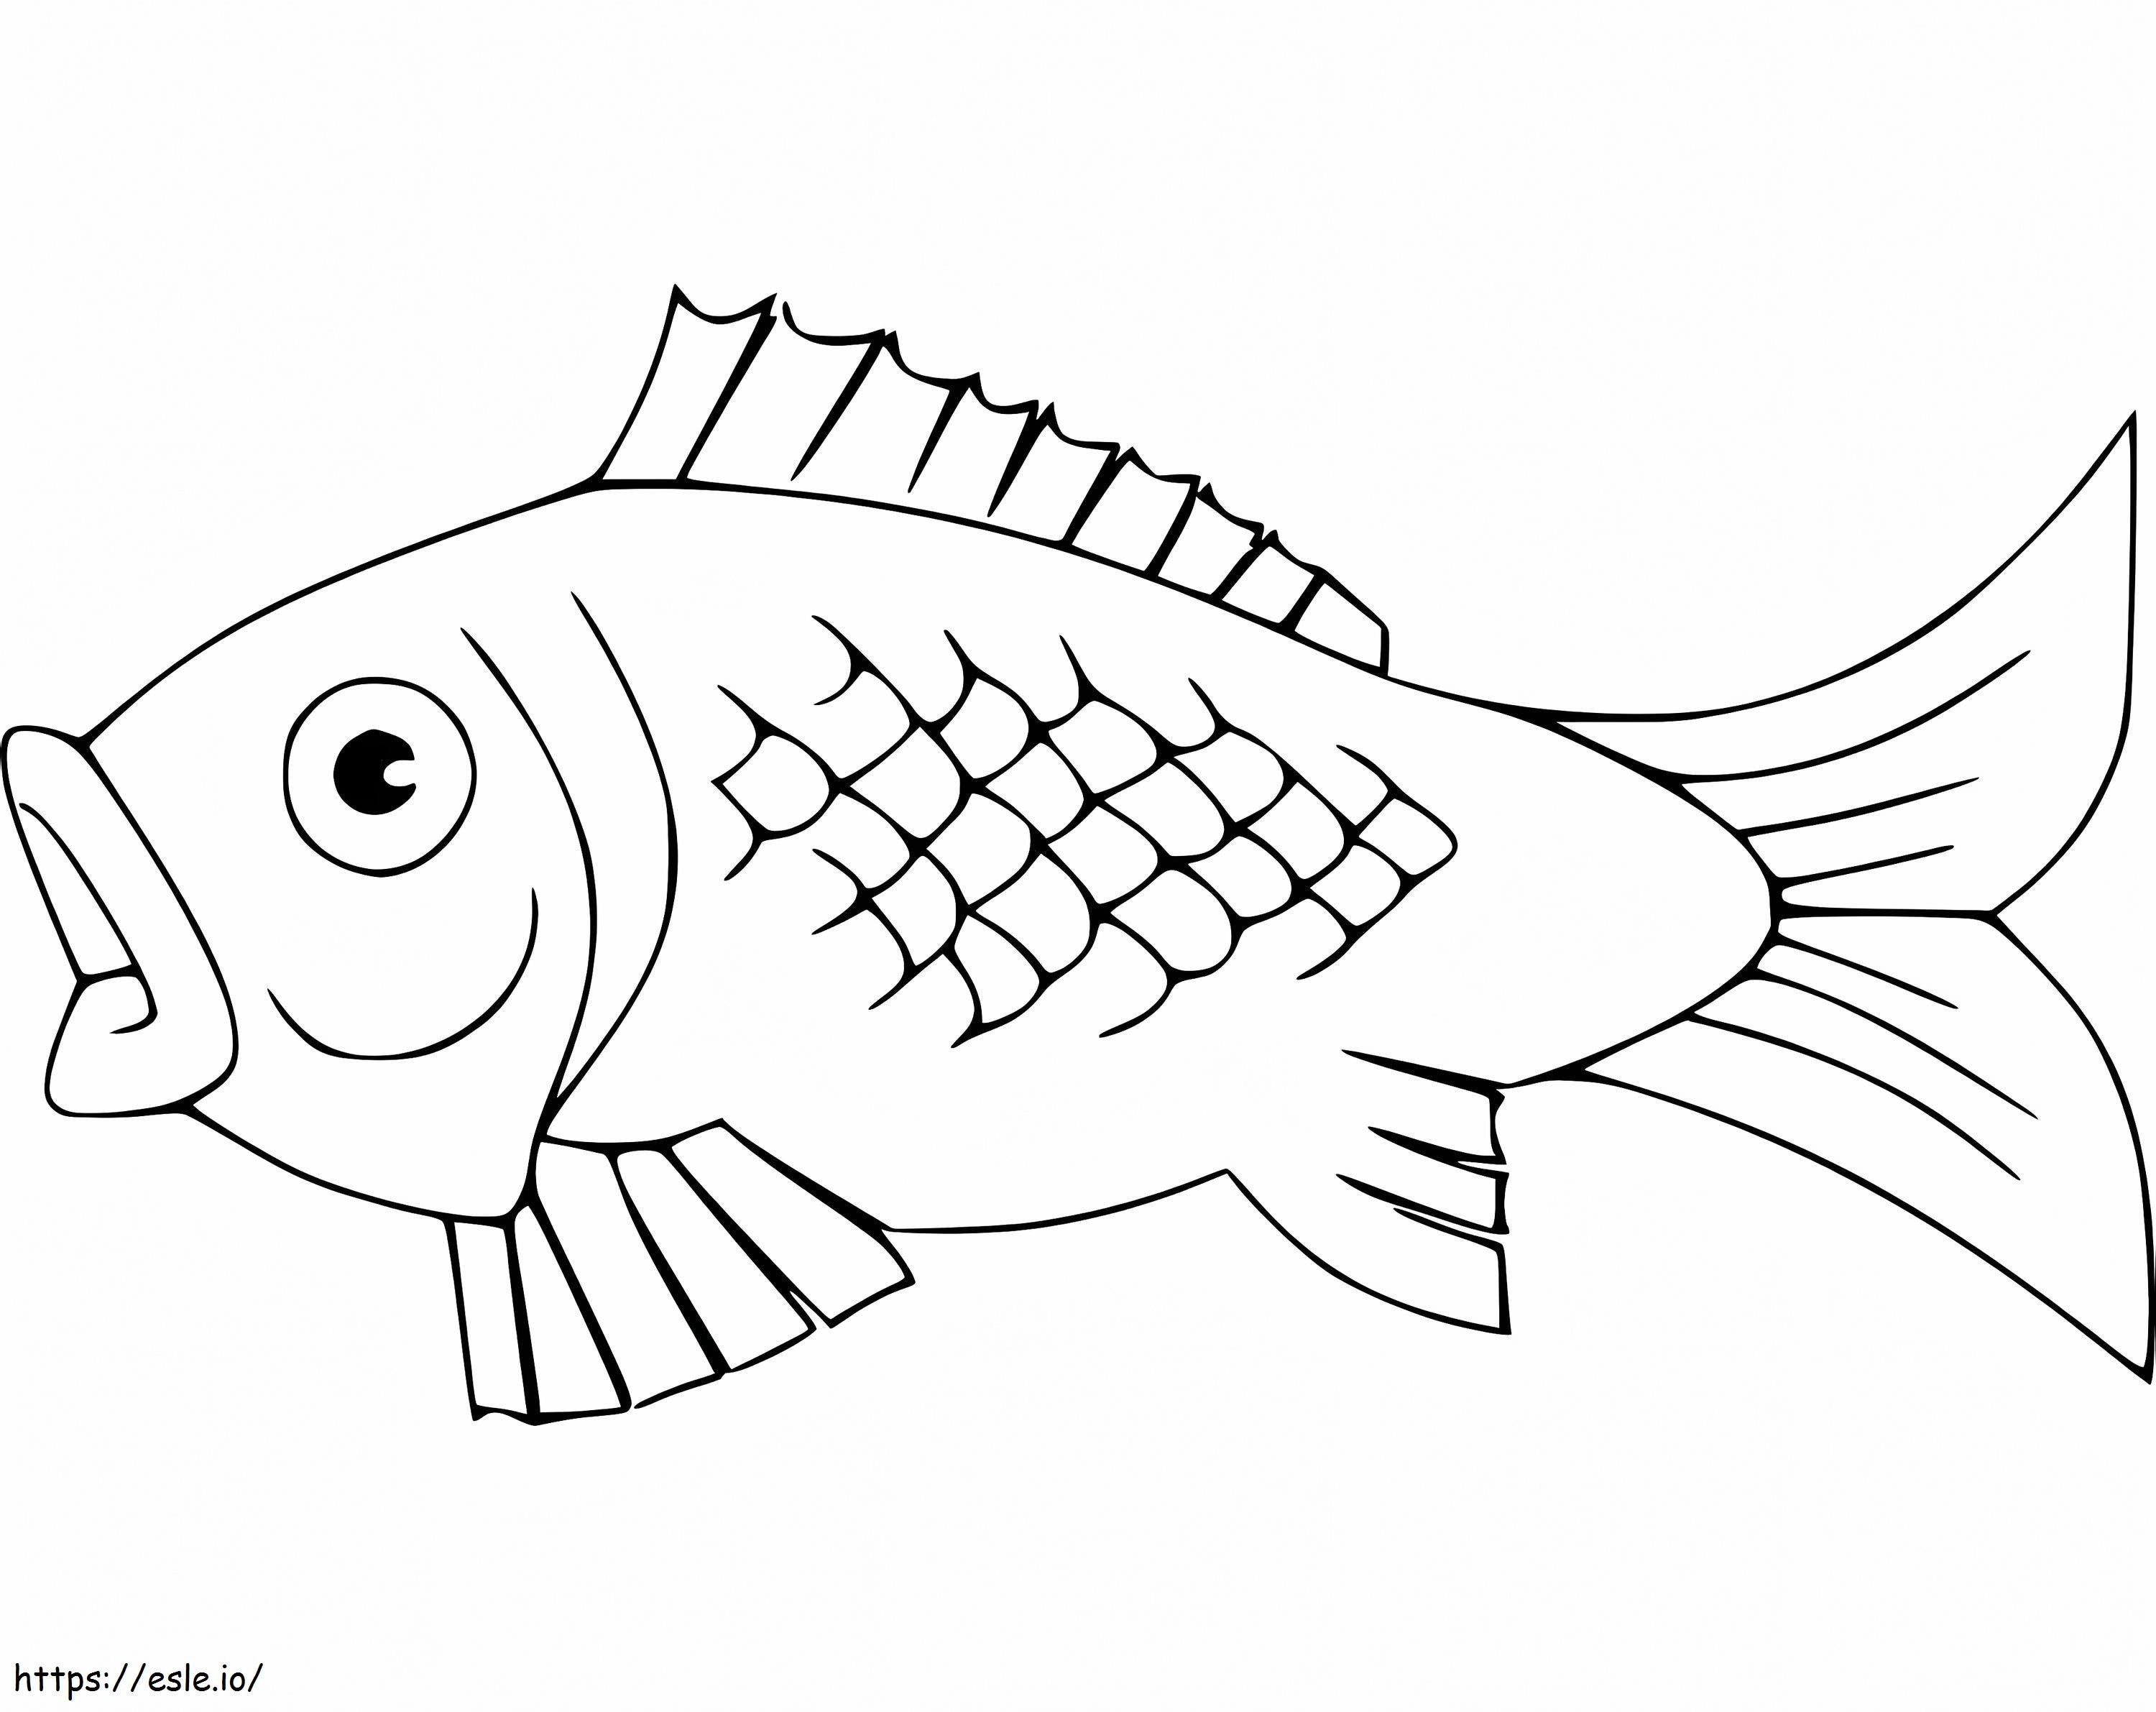 Coloriage Un poisson carpe à imprimer dessin